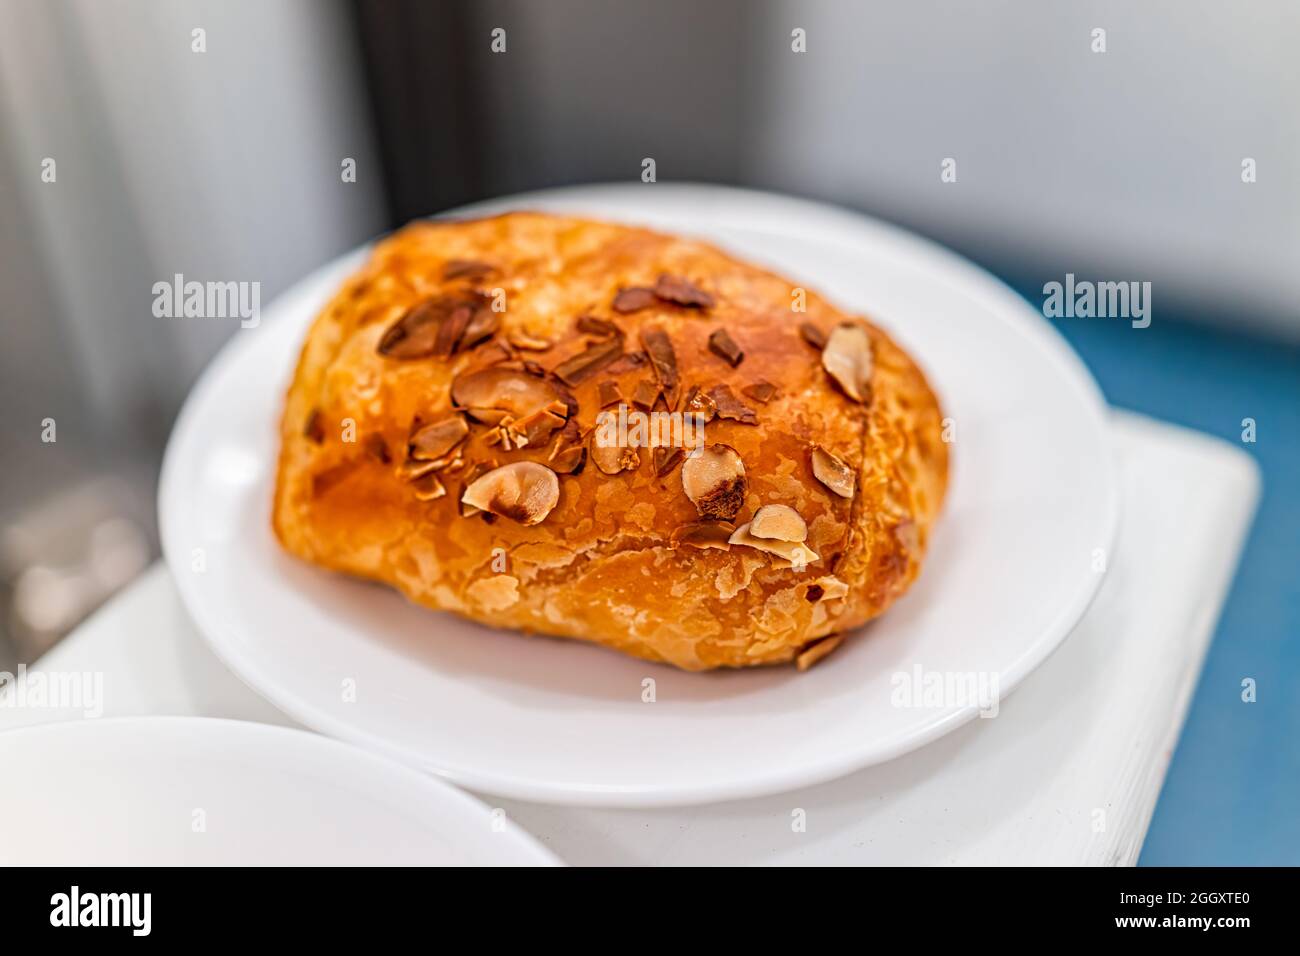 Croissant de pâtisserie doré sur des assiettes avec croûte feuilletée et crème d'amande, comme la cuisine française traditionnelle et le petit déjeuner du matin Banque D'Images